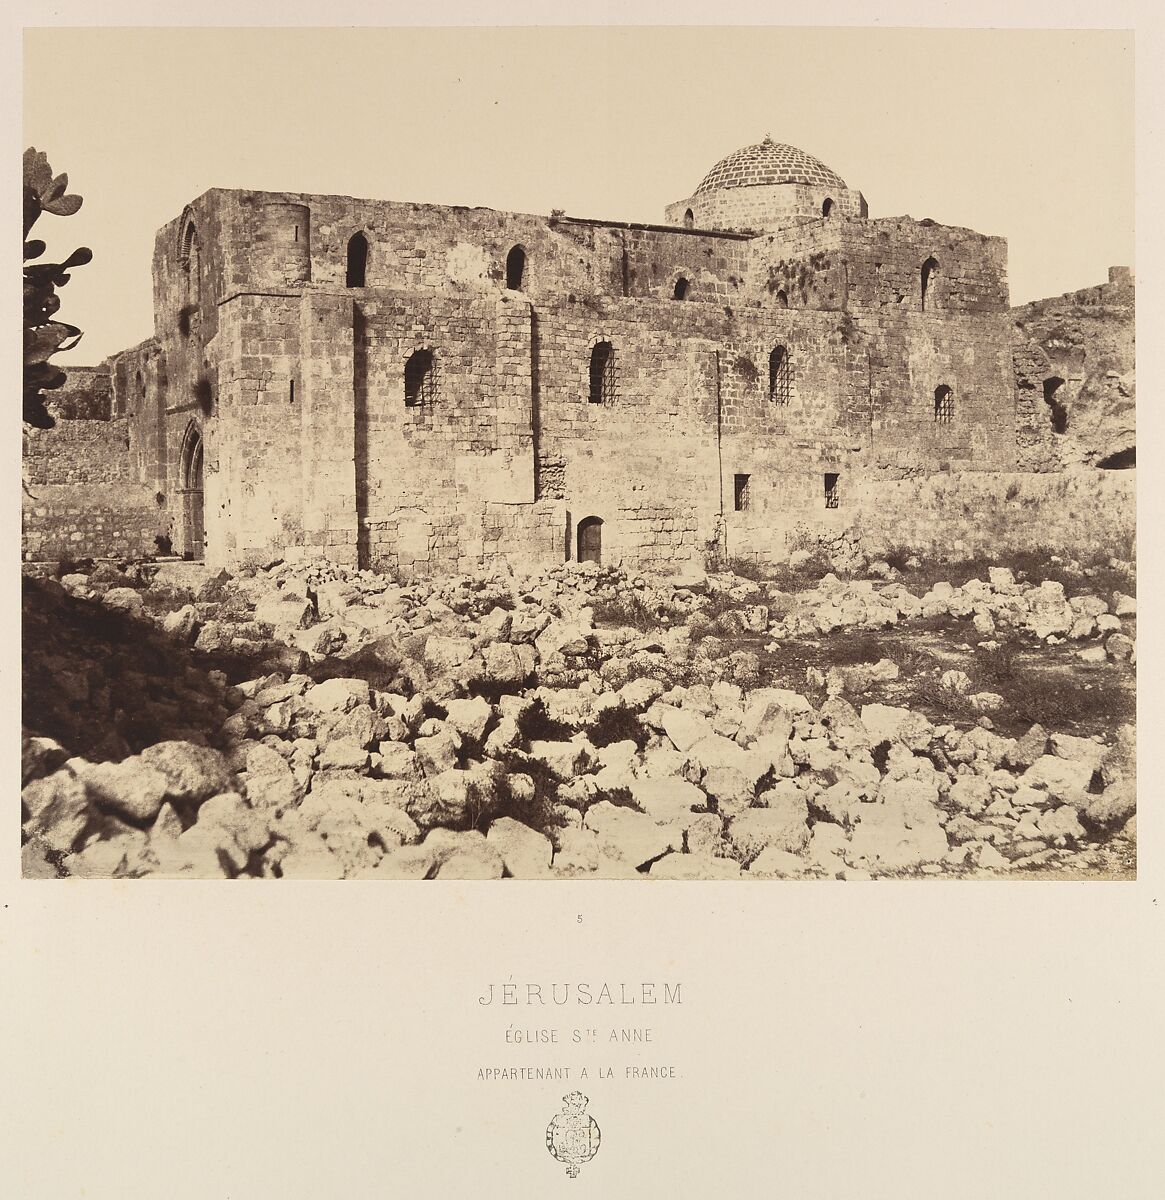 Jérusalem. Église Ste Anne appartenant à la France, Louis de Clercq (French, 1837–1901), Albumen silver print from paper negative 